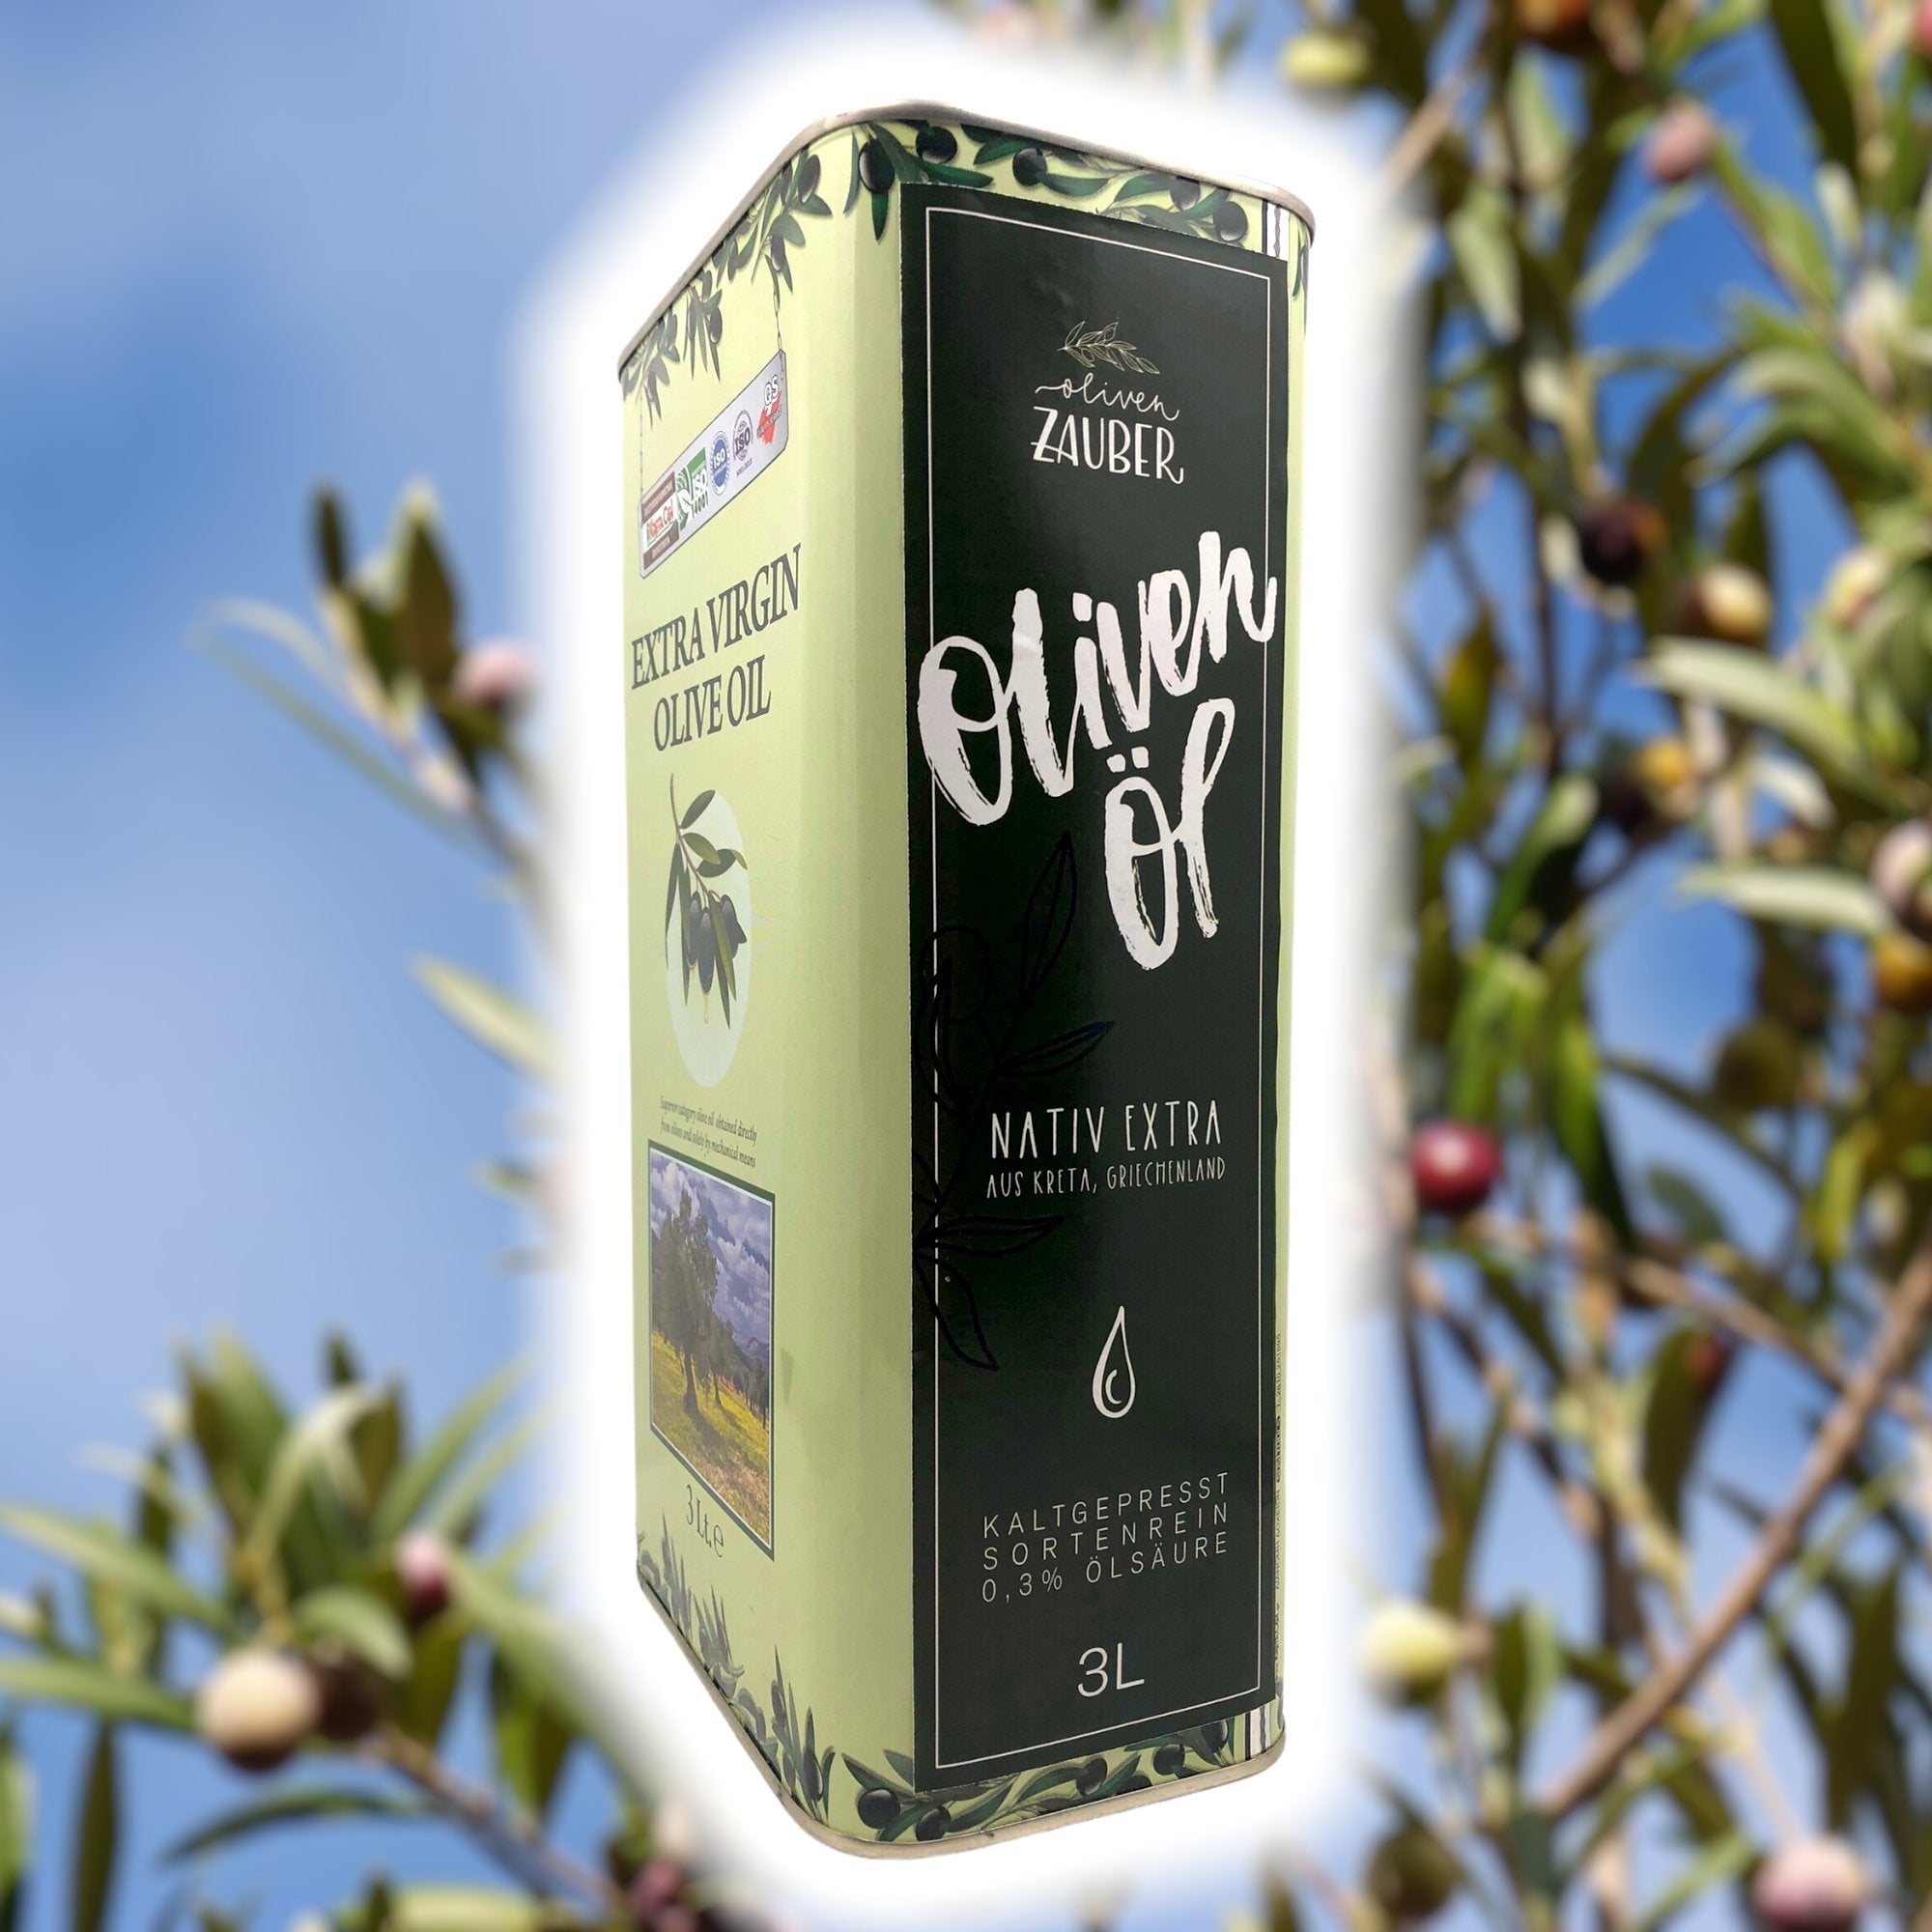 Griechisches Olivenöl nativ extra aus Kreta – 3 Liter Kanister - OlivenZauber - Olivenöl neu erleben